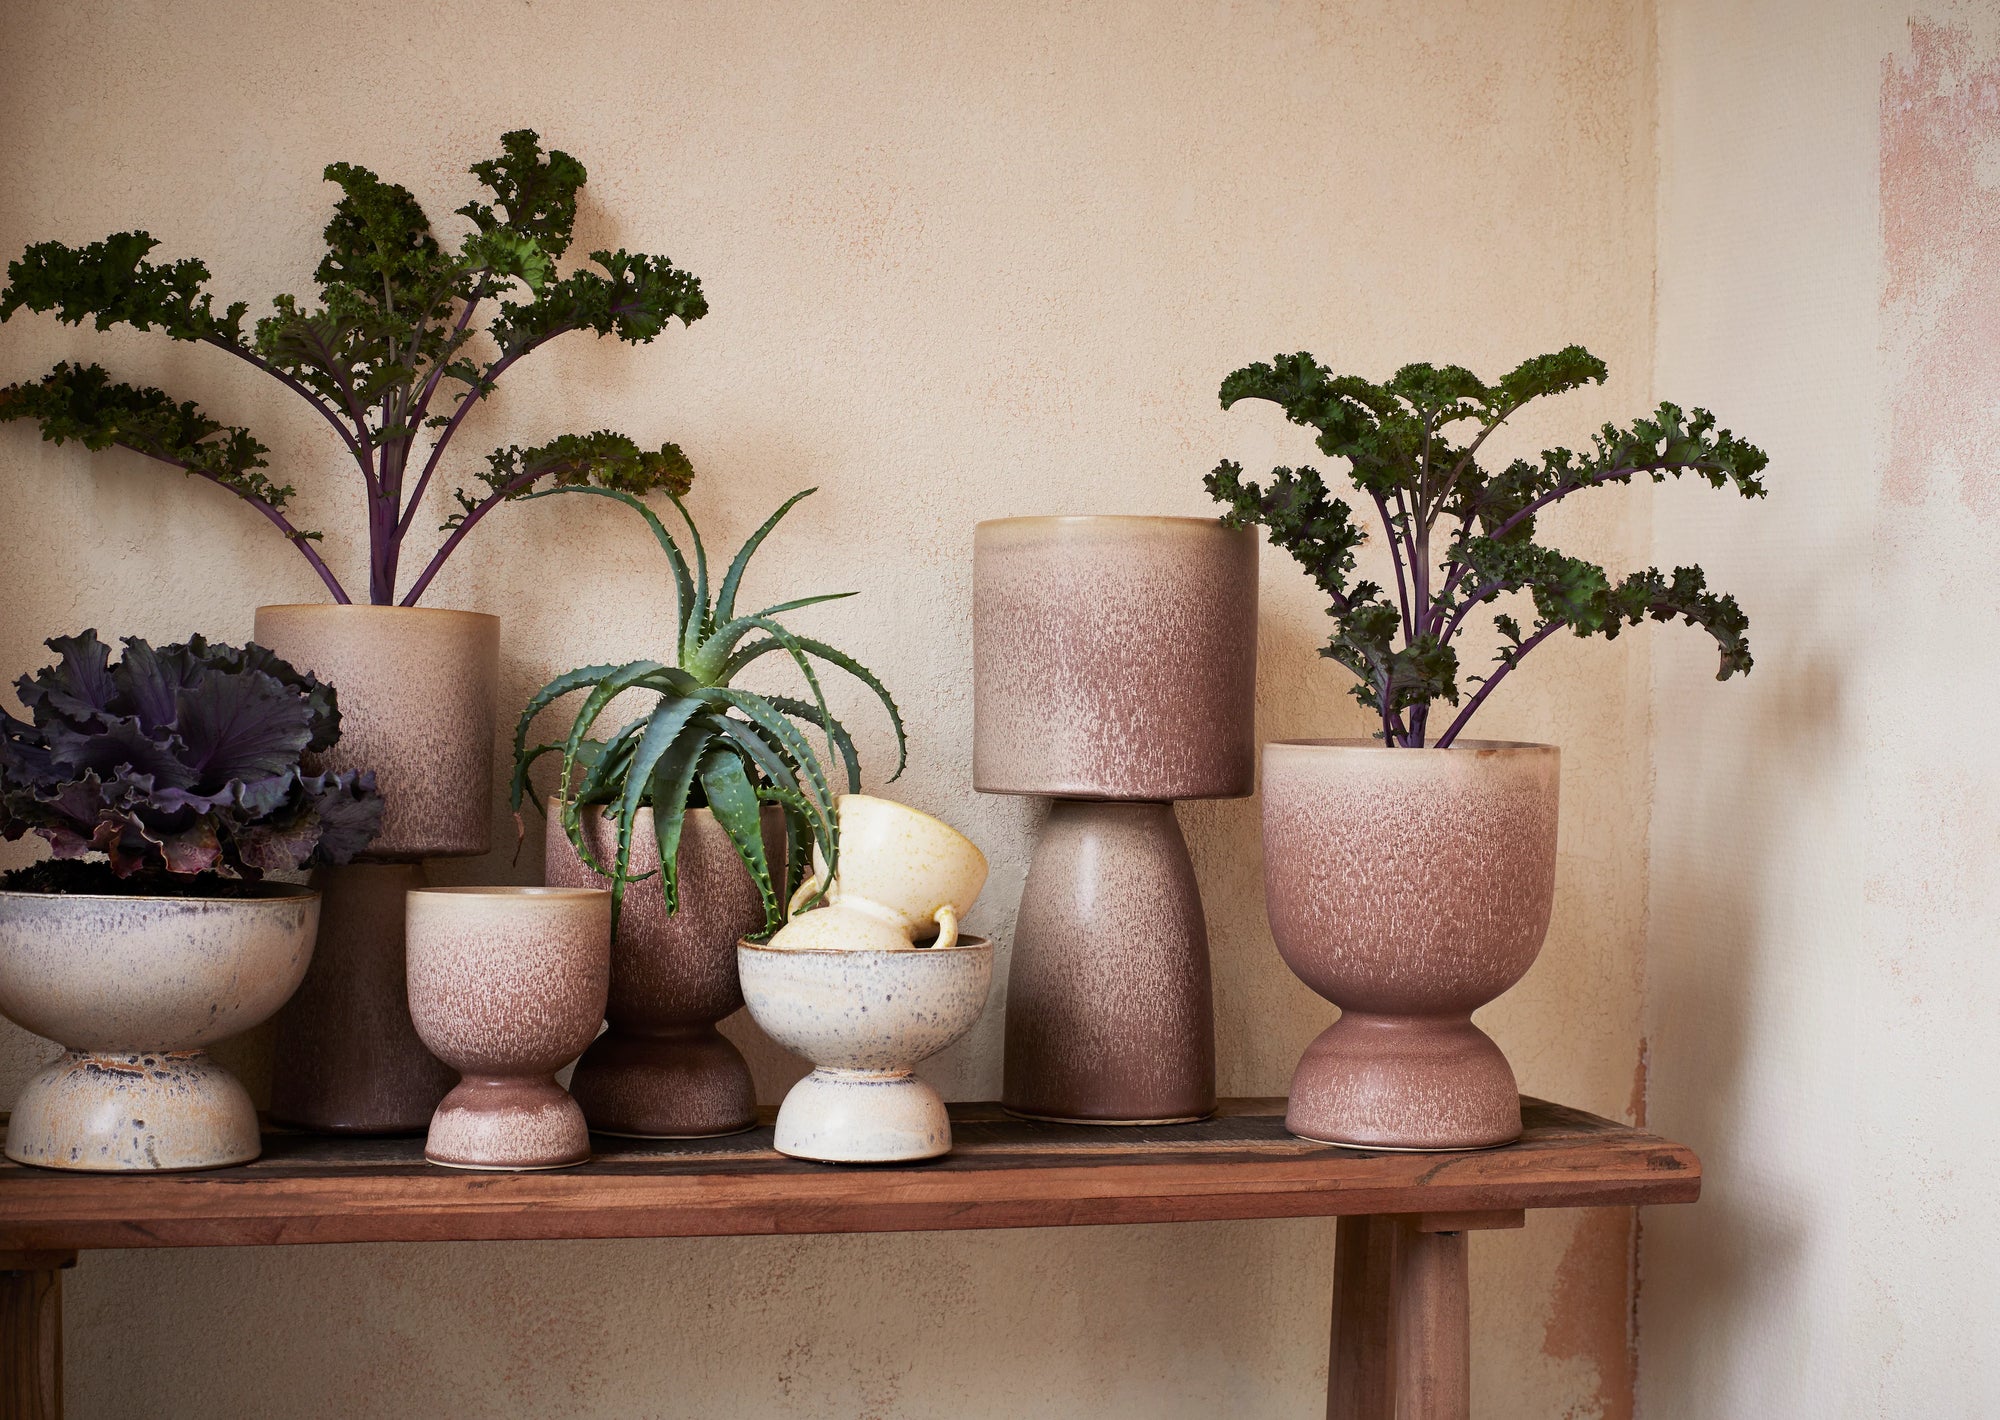 Keramik Flowerpot ø18,5cm, natur